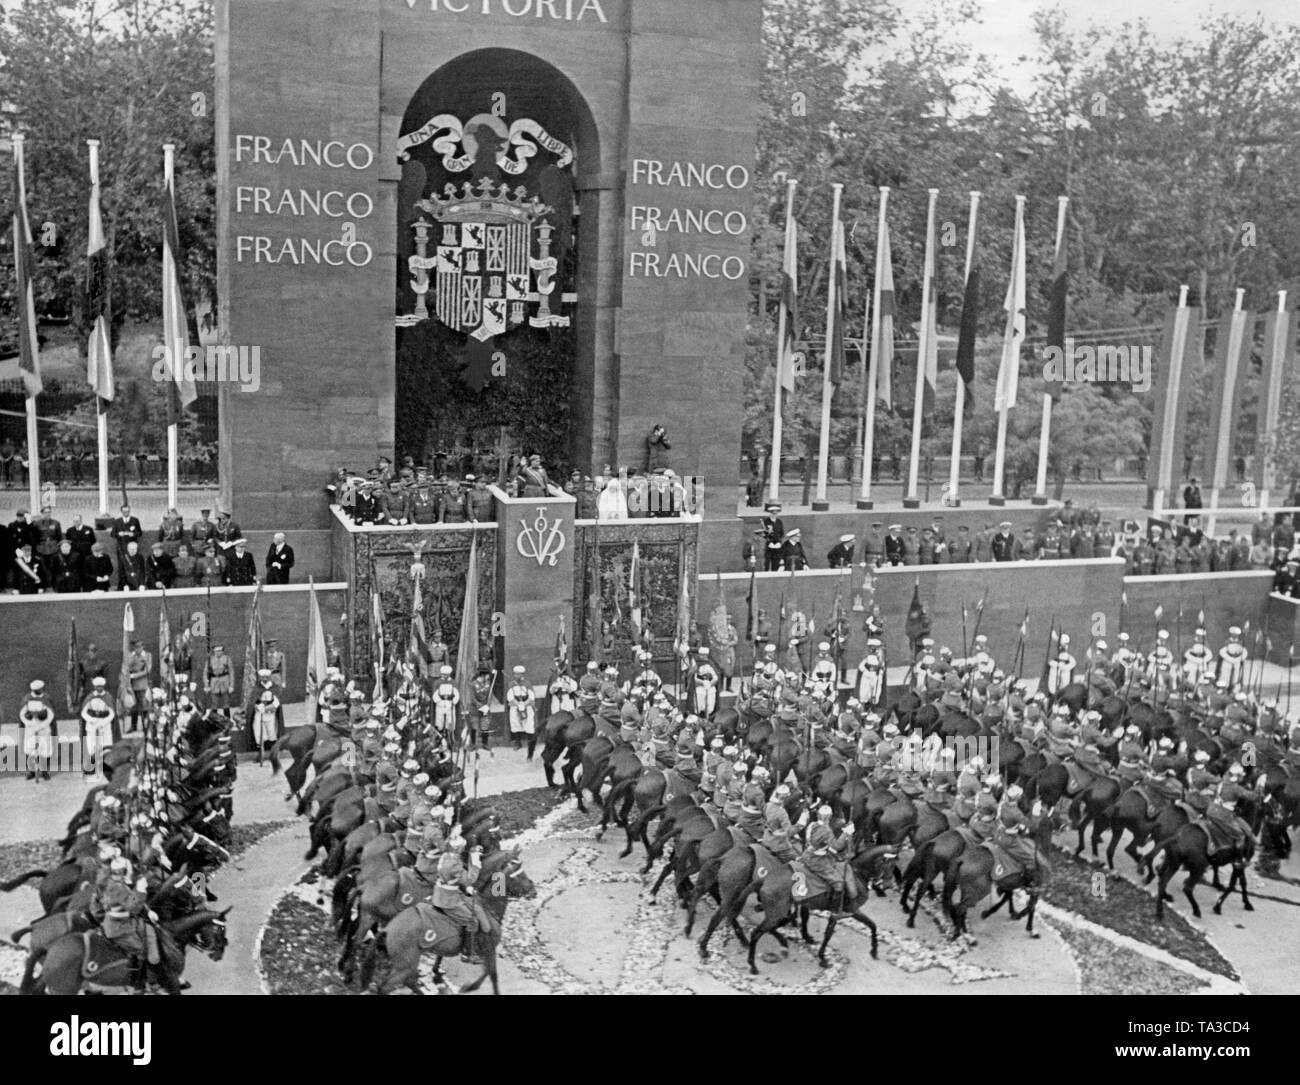 Una unità montata delle guardie del palazzo in vecchie uniformi durante il mese di marzo in passato, prima che il generale Francisco Franco il 19 maggio 1939 a Madrid. Il generale saluta con il saluto fascista. Foto Stock